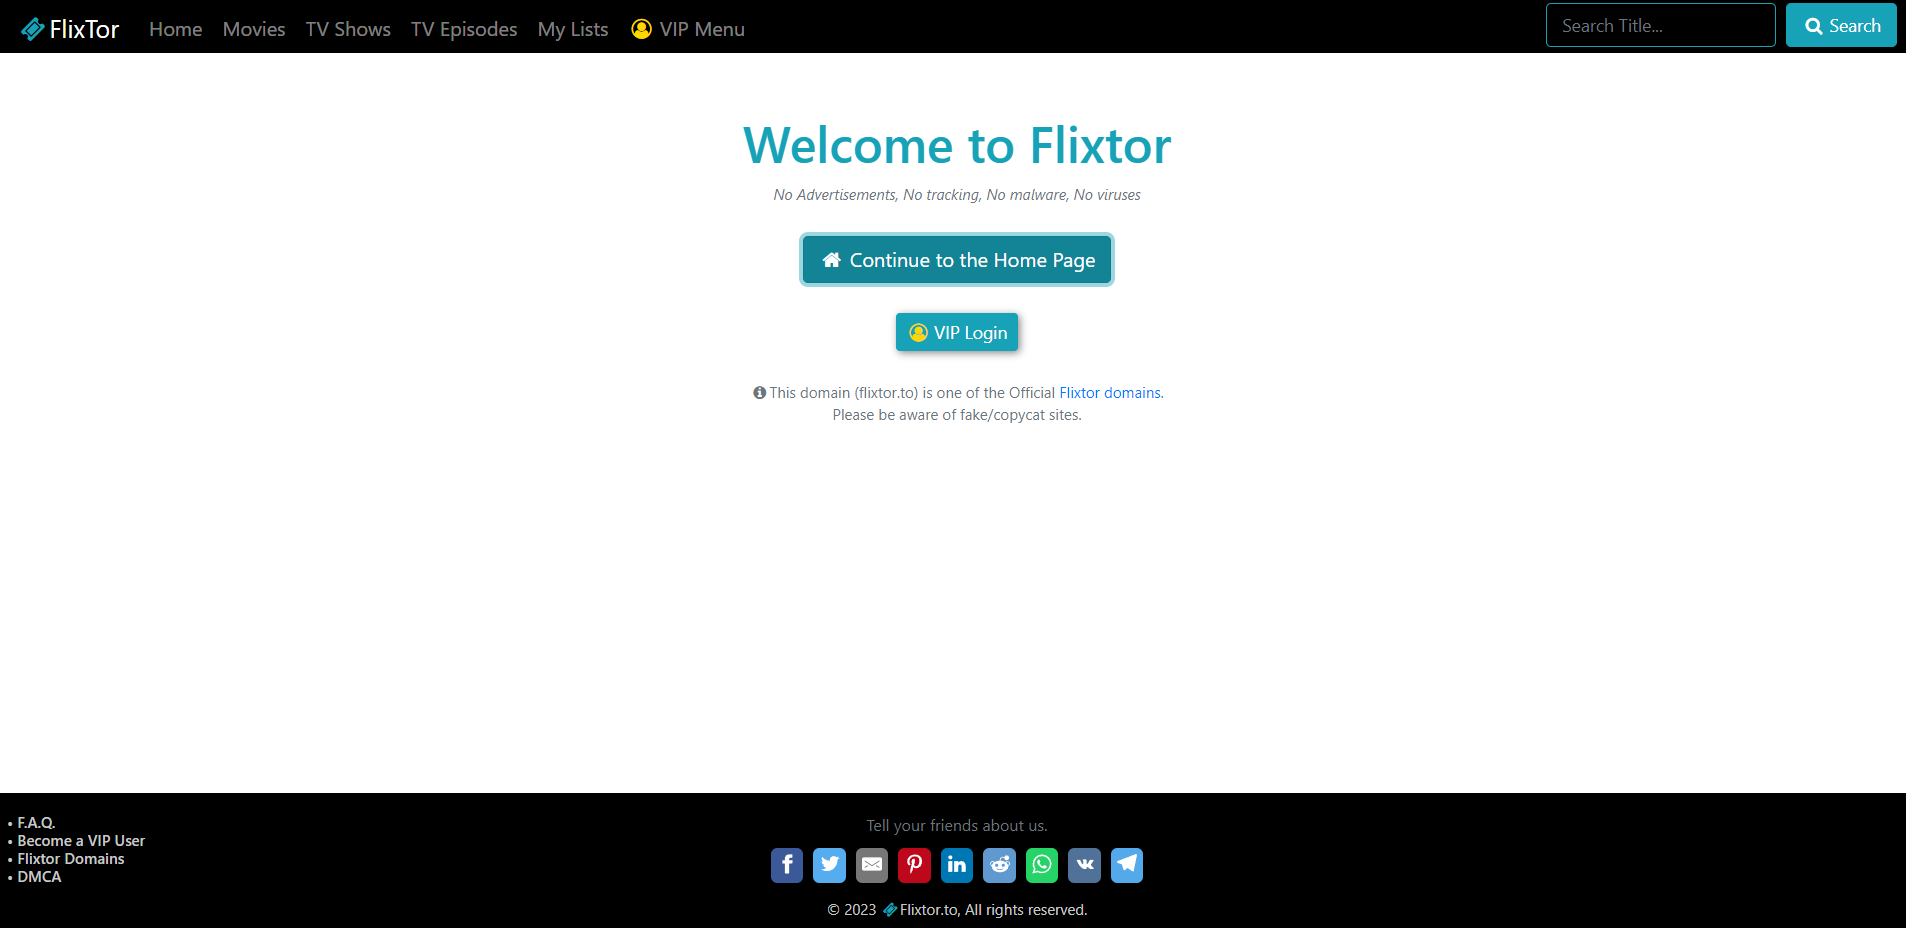 FlixTor Overview